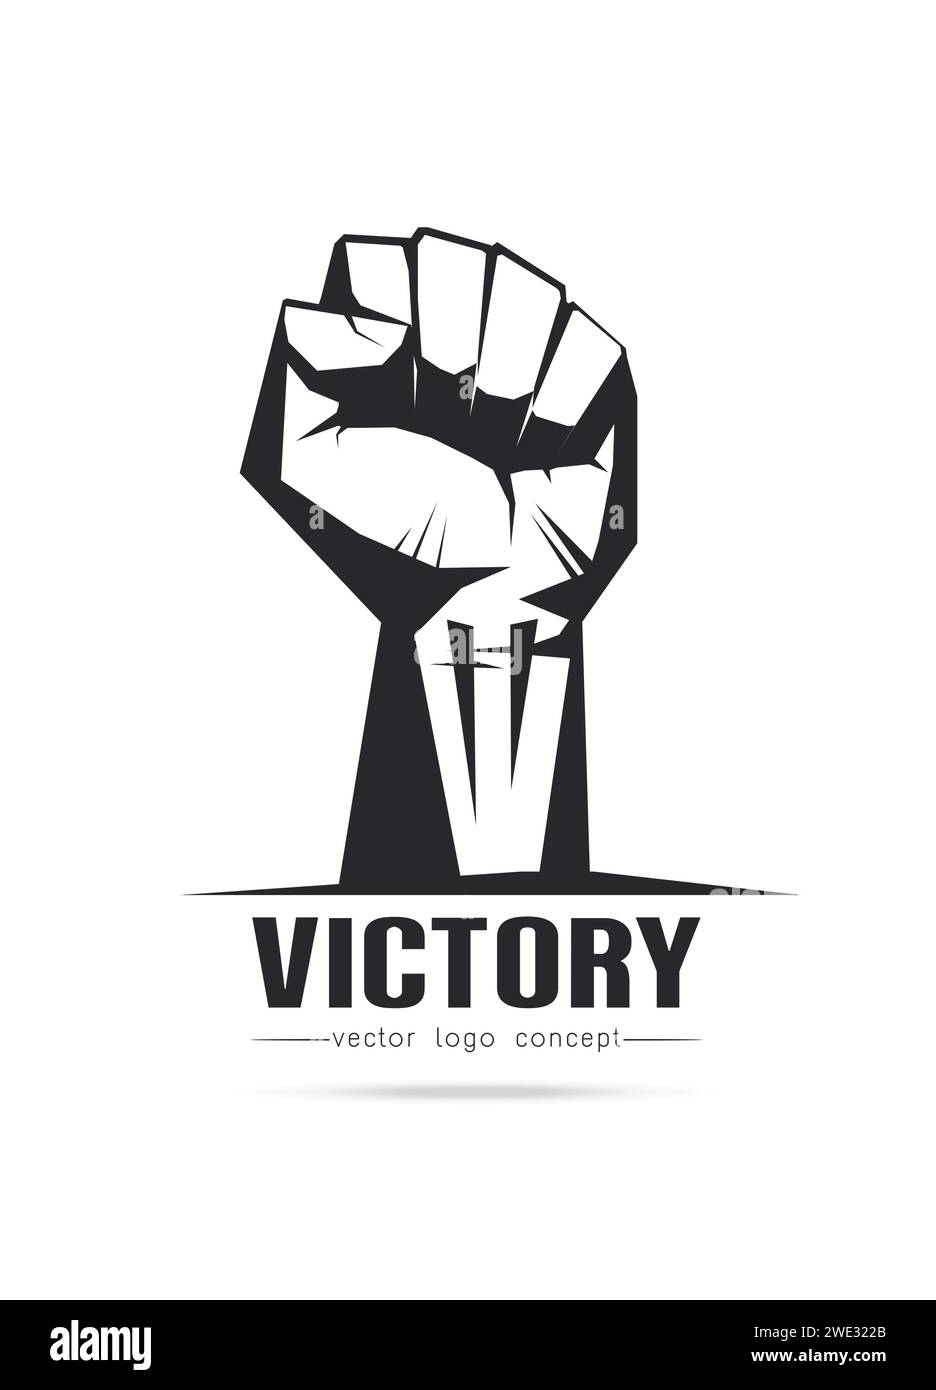 Immagine stilizzata del modello del logo Fist Victory per copertine, logo, poster, inviti su sfondo bianco illustrazione vettoriale Illustrazione Vettoriale